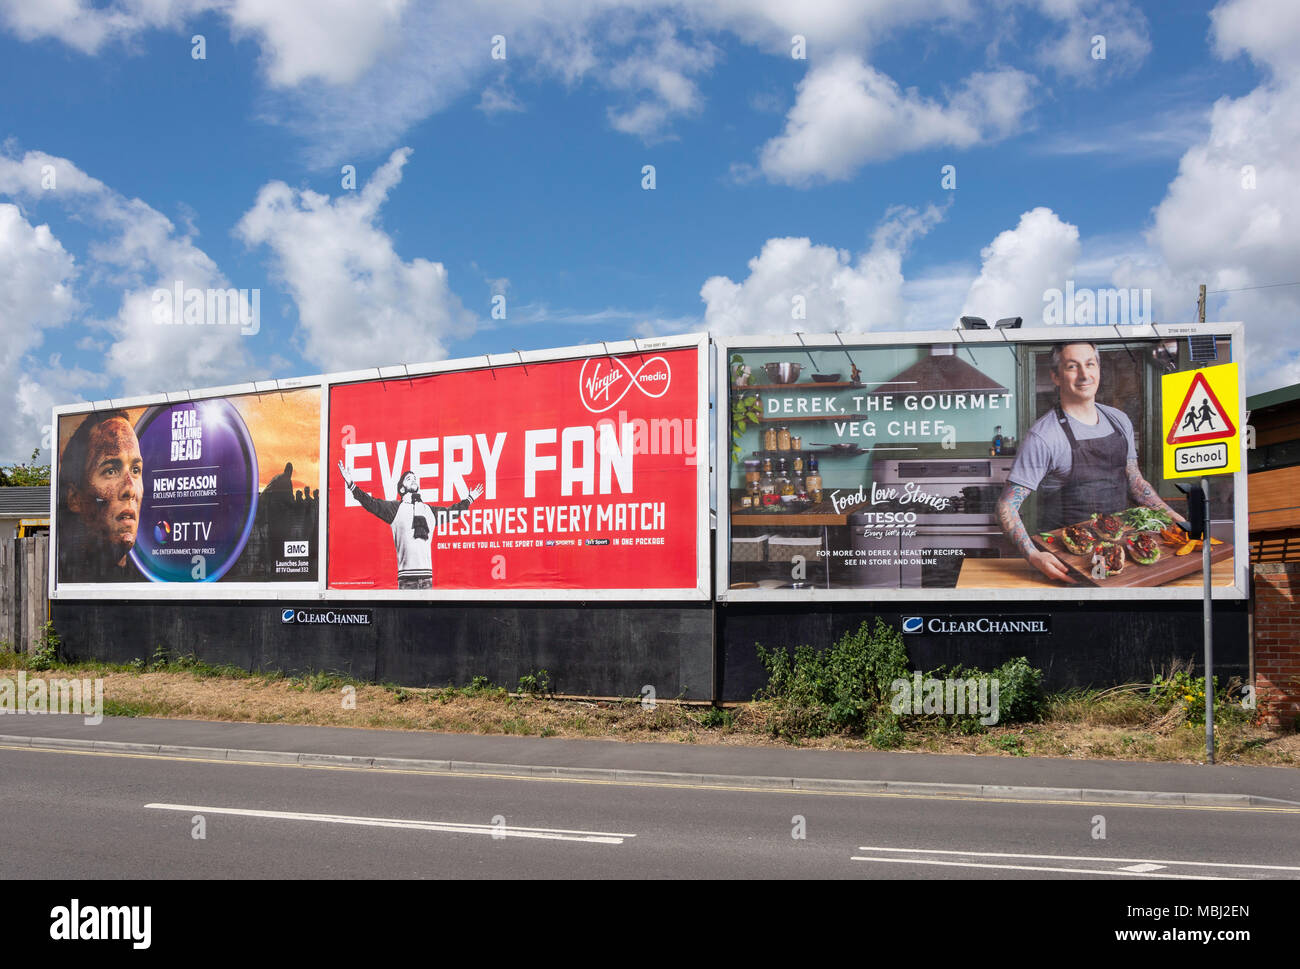 Les panneaux publicitaires sur Commercial Road, Totton, Totton et Eling, Hampshire, Angleterre, Royaume-Uni Banque D'Images